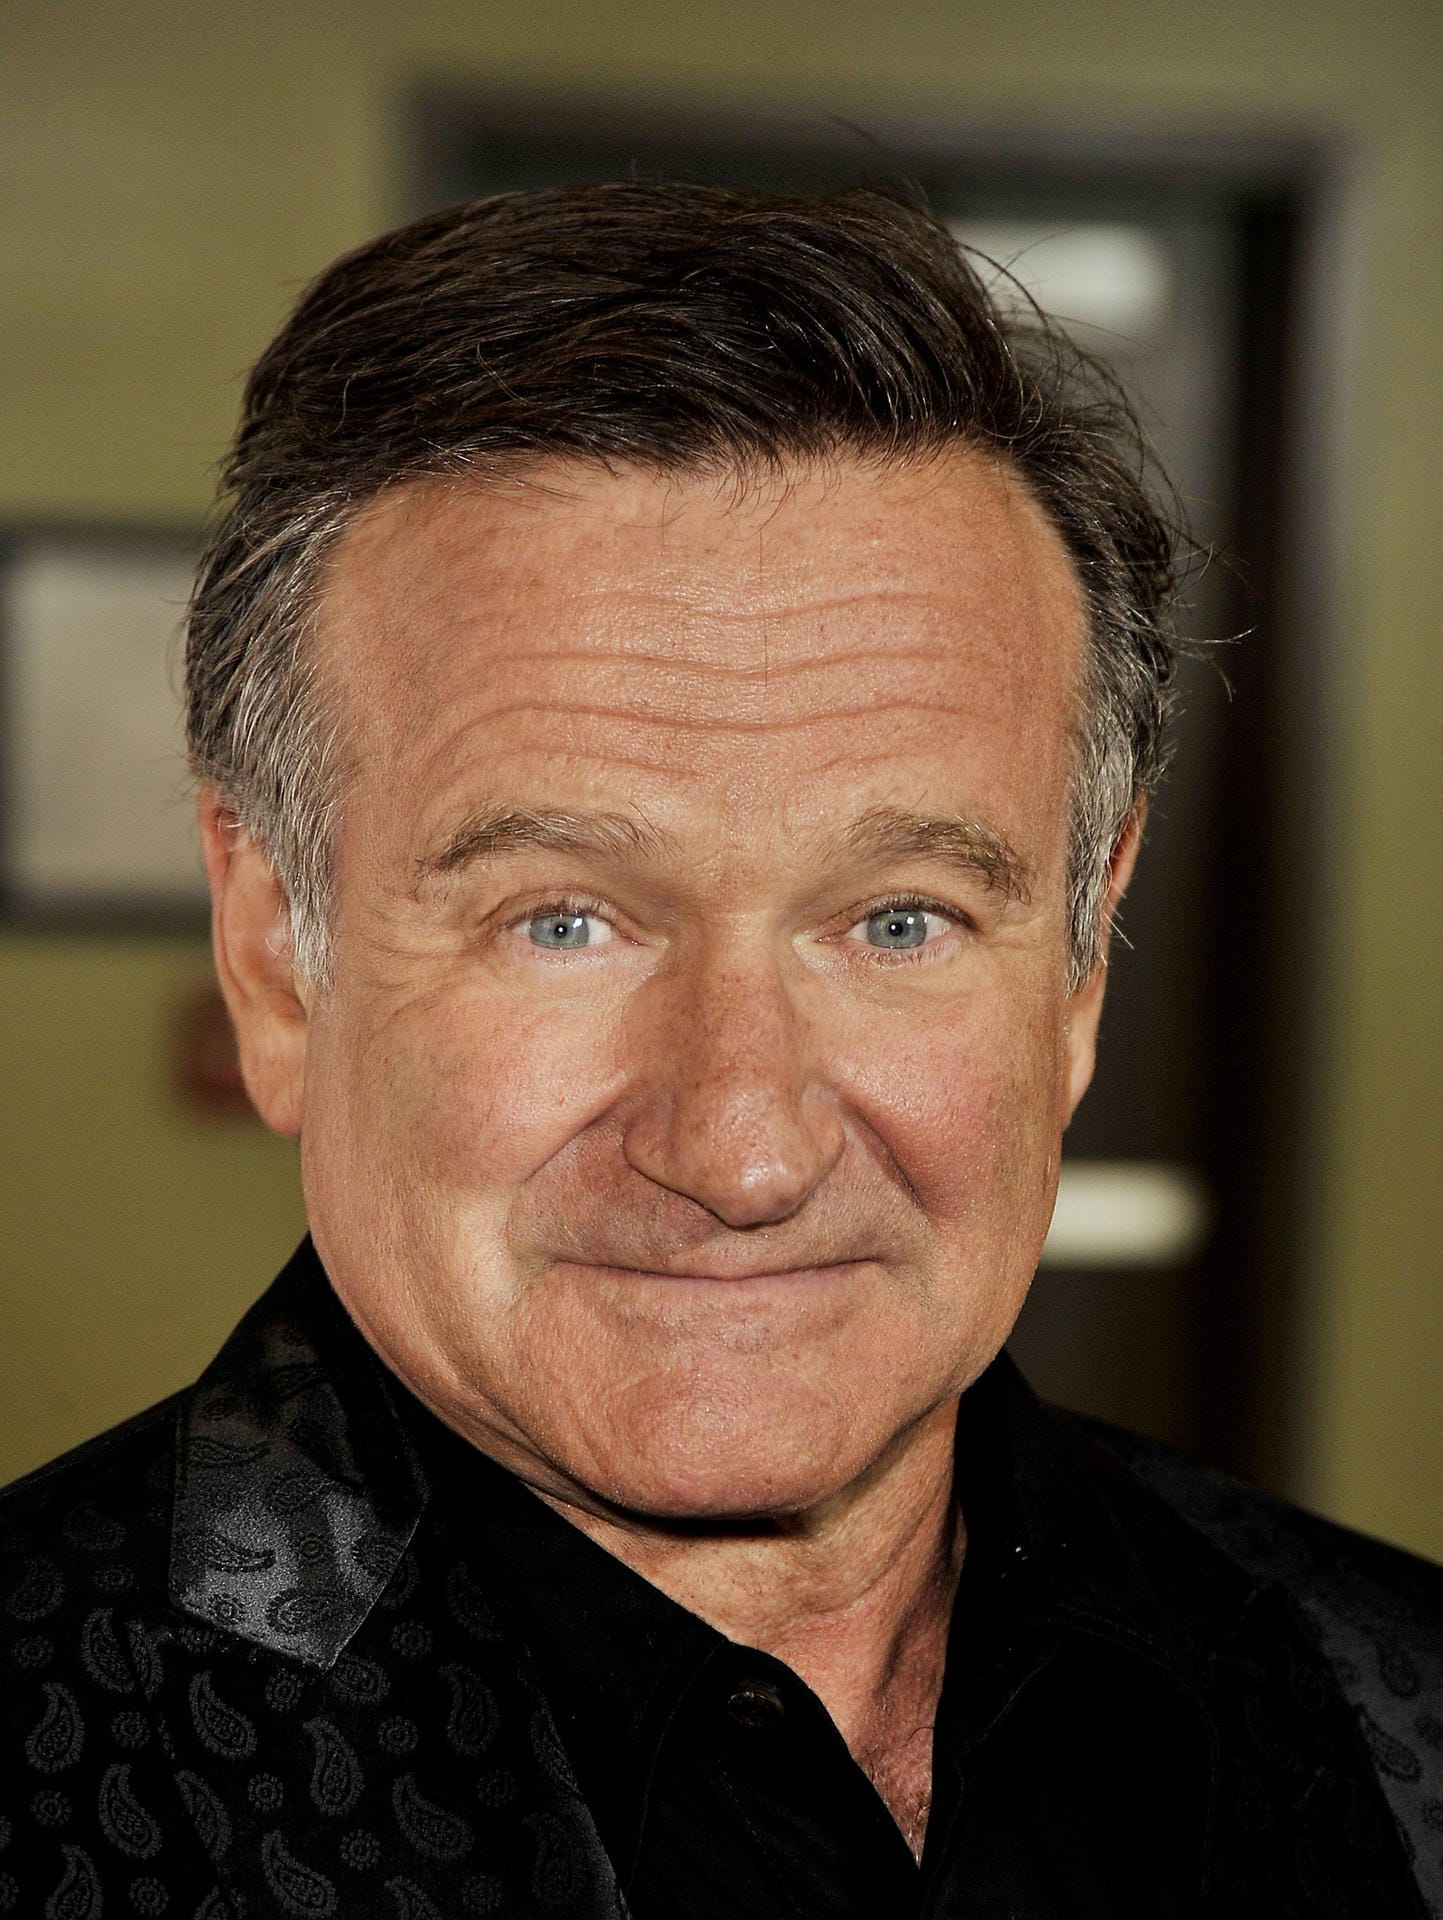 Robin Williams: Der Schauspieler starb am 11. August 2014. Wie seine Witwe Susan Schneider später enthüllte, litt er unter anderem an der Parkinson-Krankheit in einem frühen Stadium.